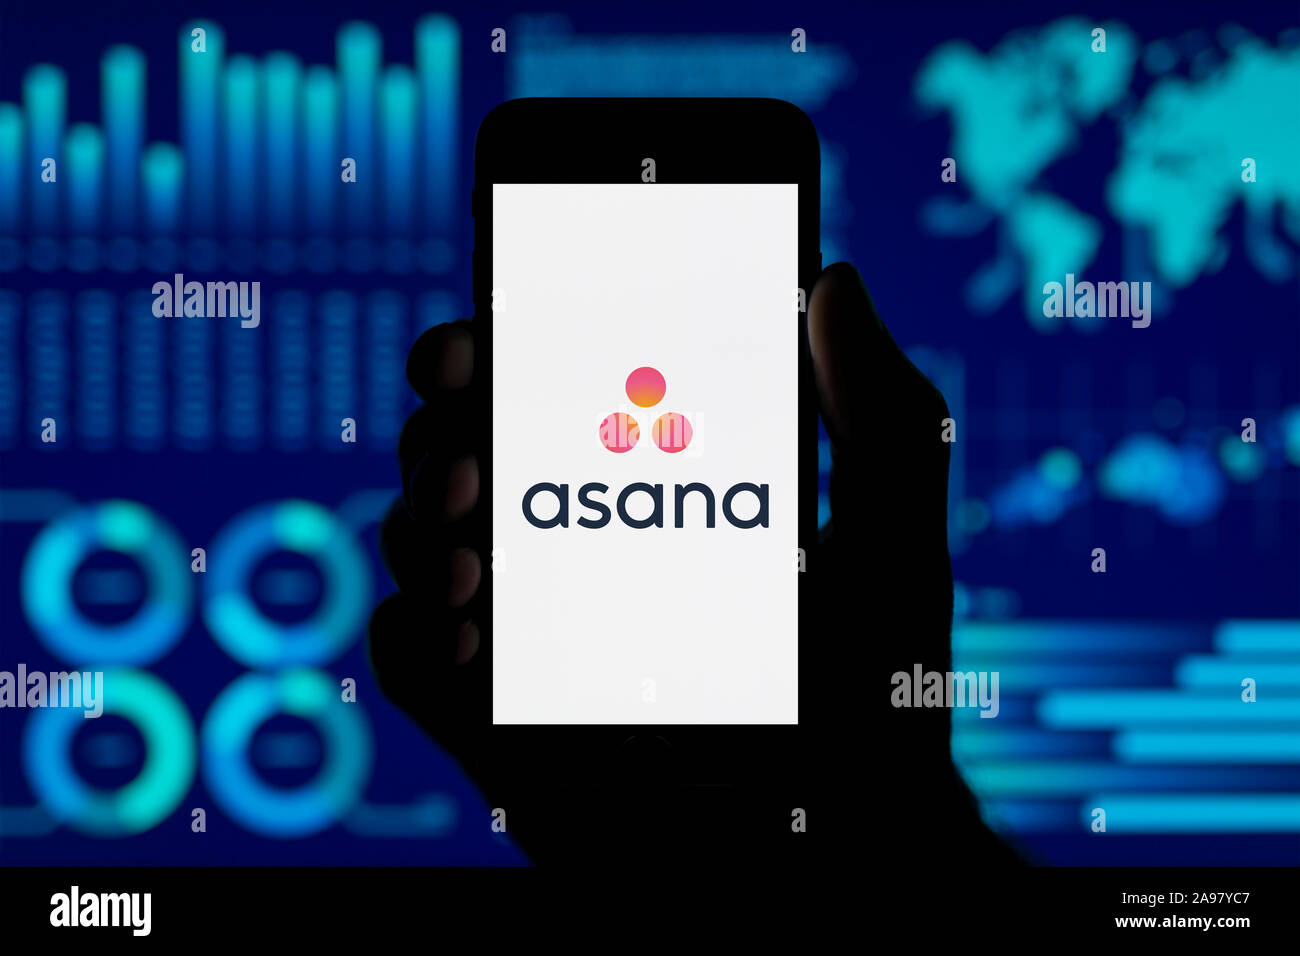 Un homme est titulaire de l'iPhone qui affiche le logo d'asanas, tourné dans un style de visualisation de données (fond usage éditorial uniquement). Banque D'Images